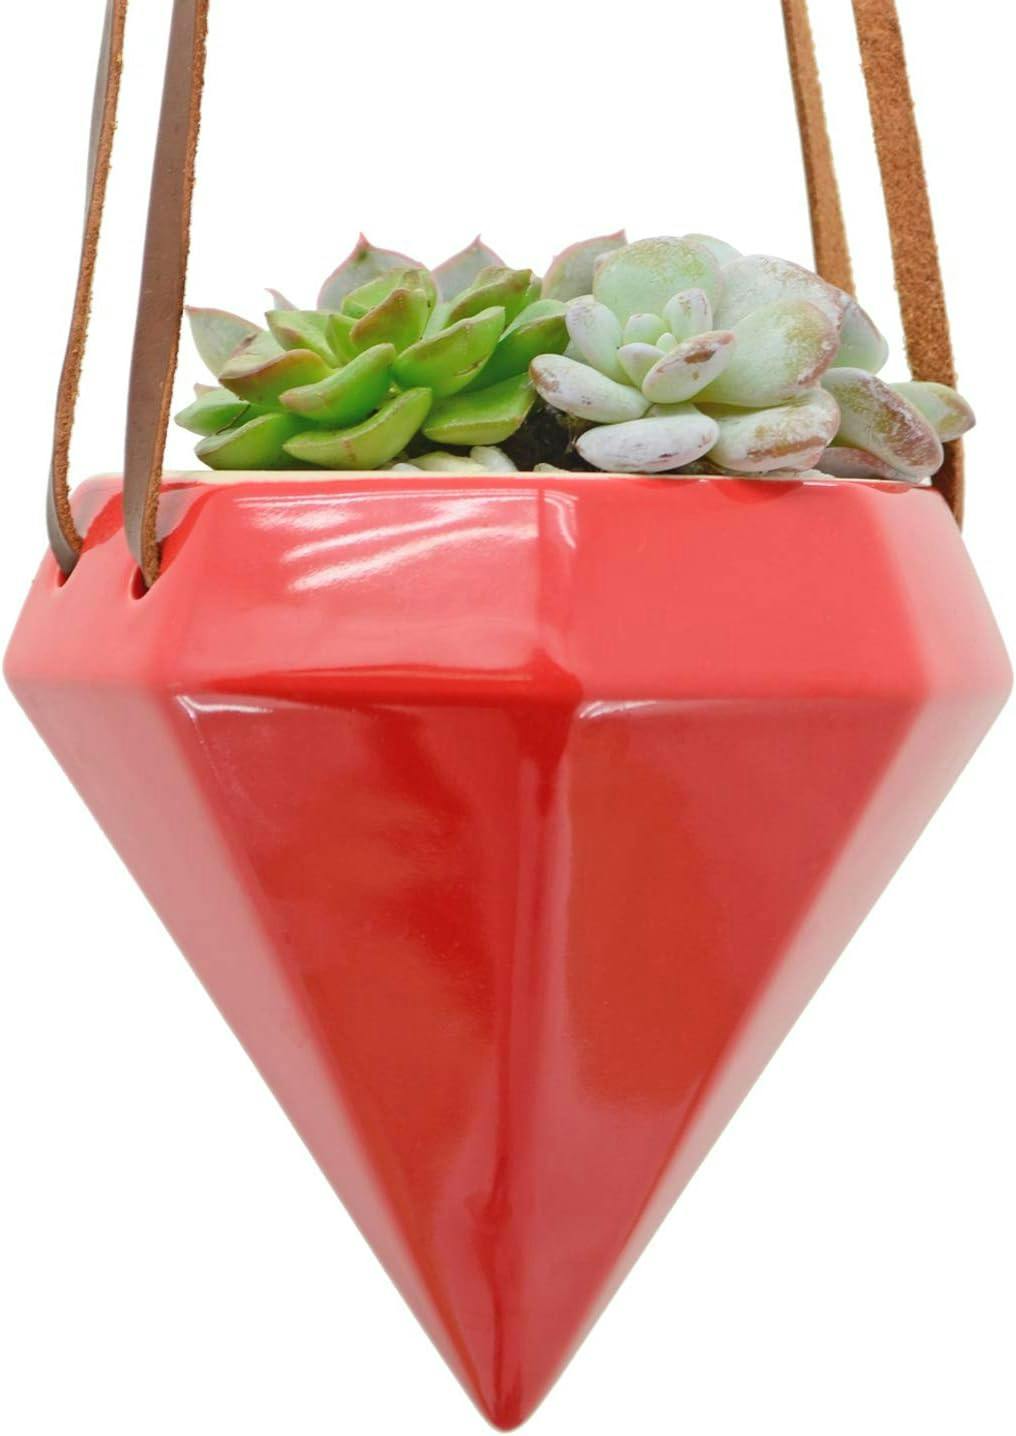 Glam Red Ceramic Cone Hanging Planter - 4.5" Indoor/Outdoor